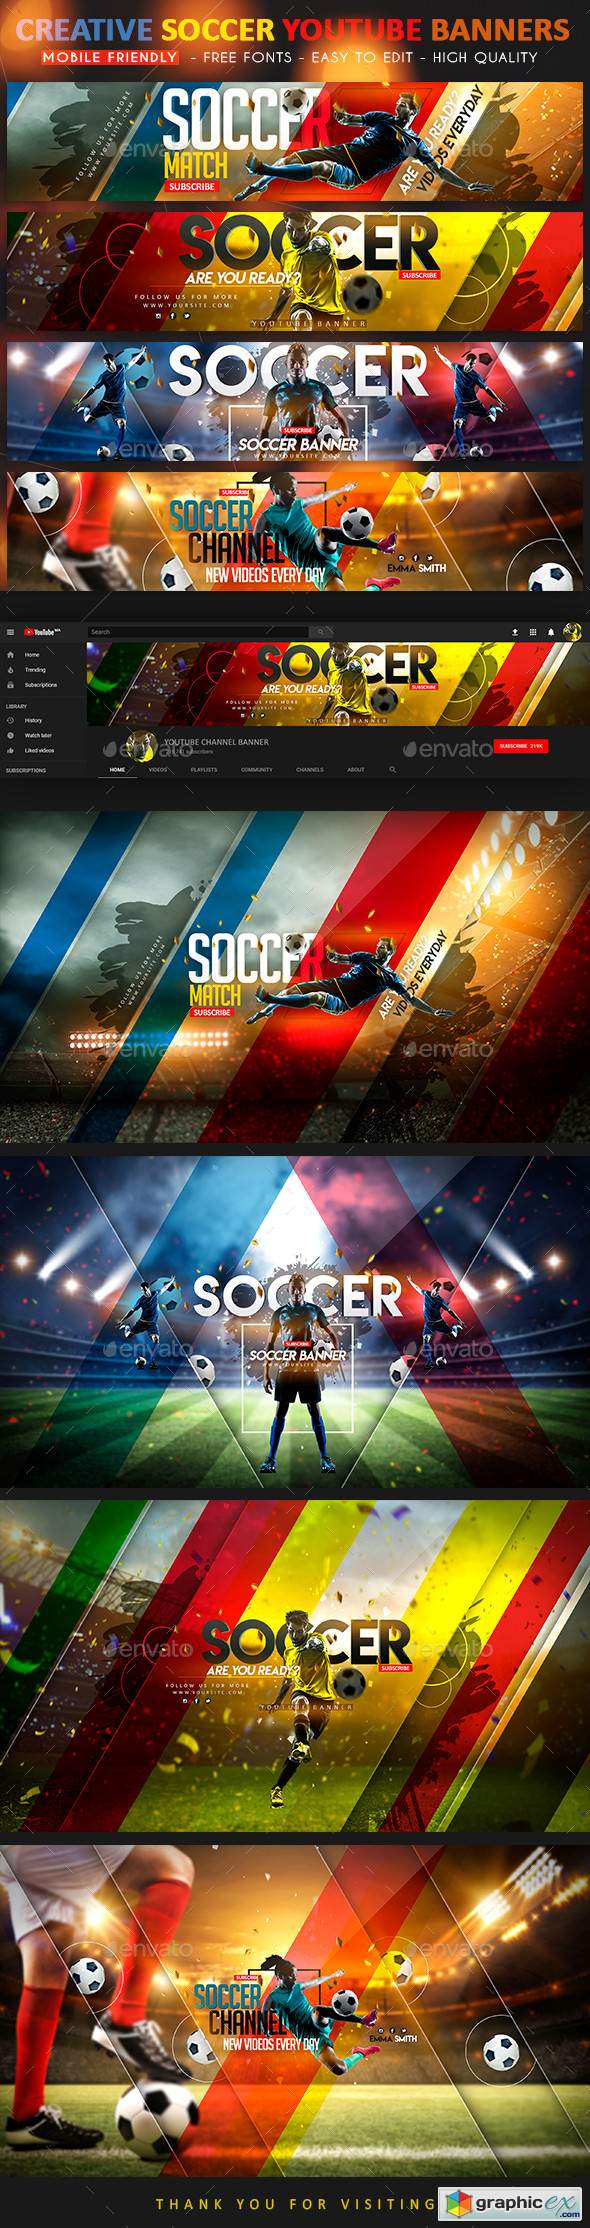 Soccer YouTube Banner